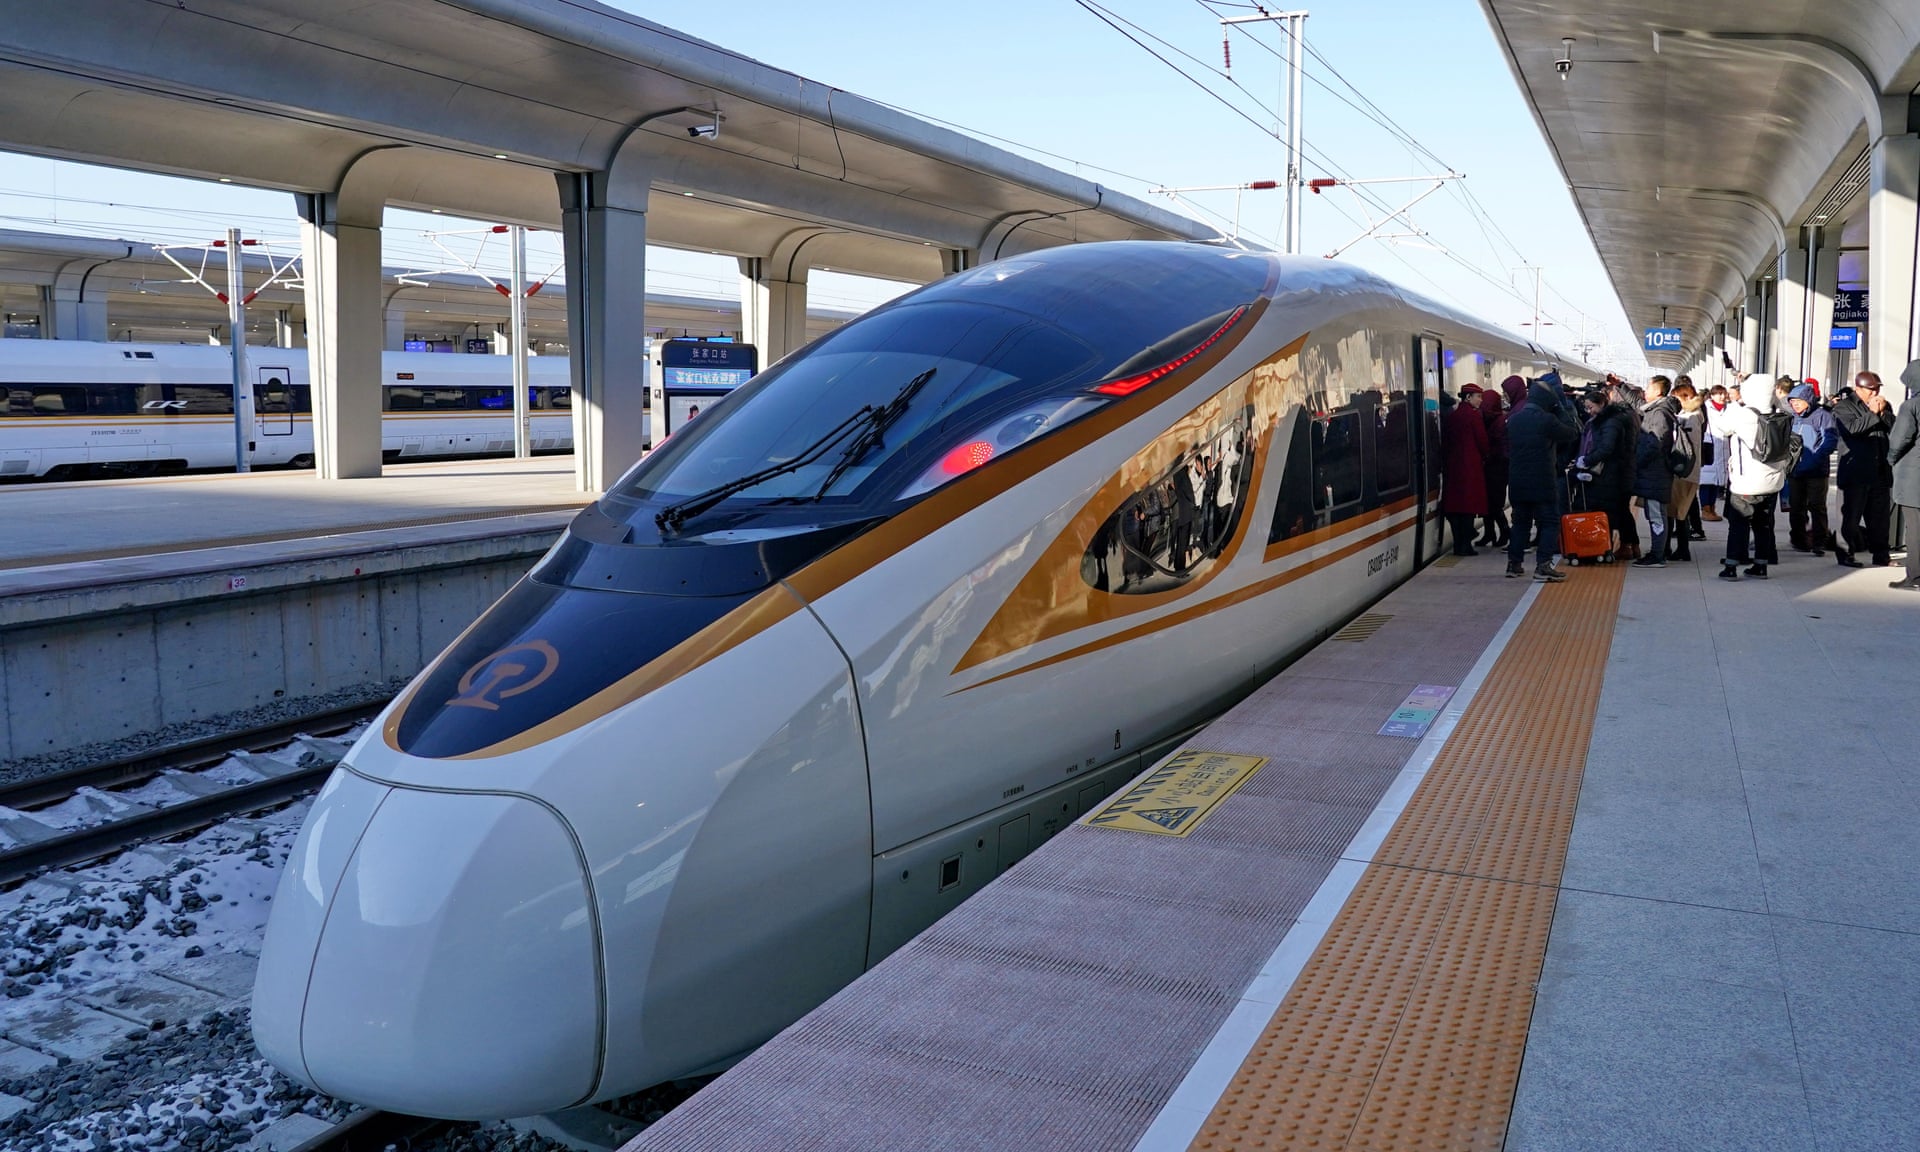 honkai star rail achievements tracker